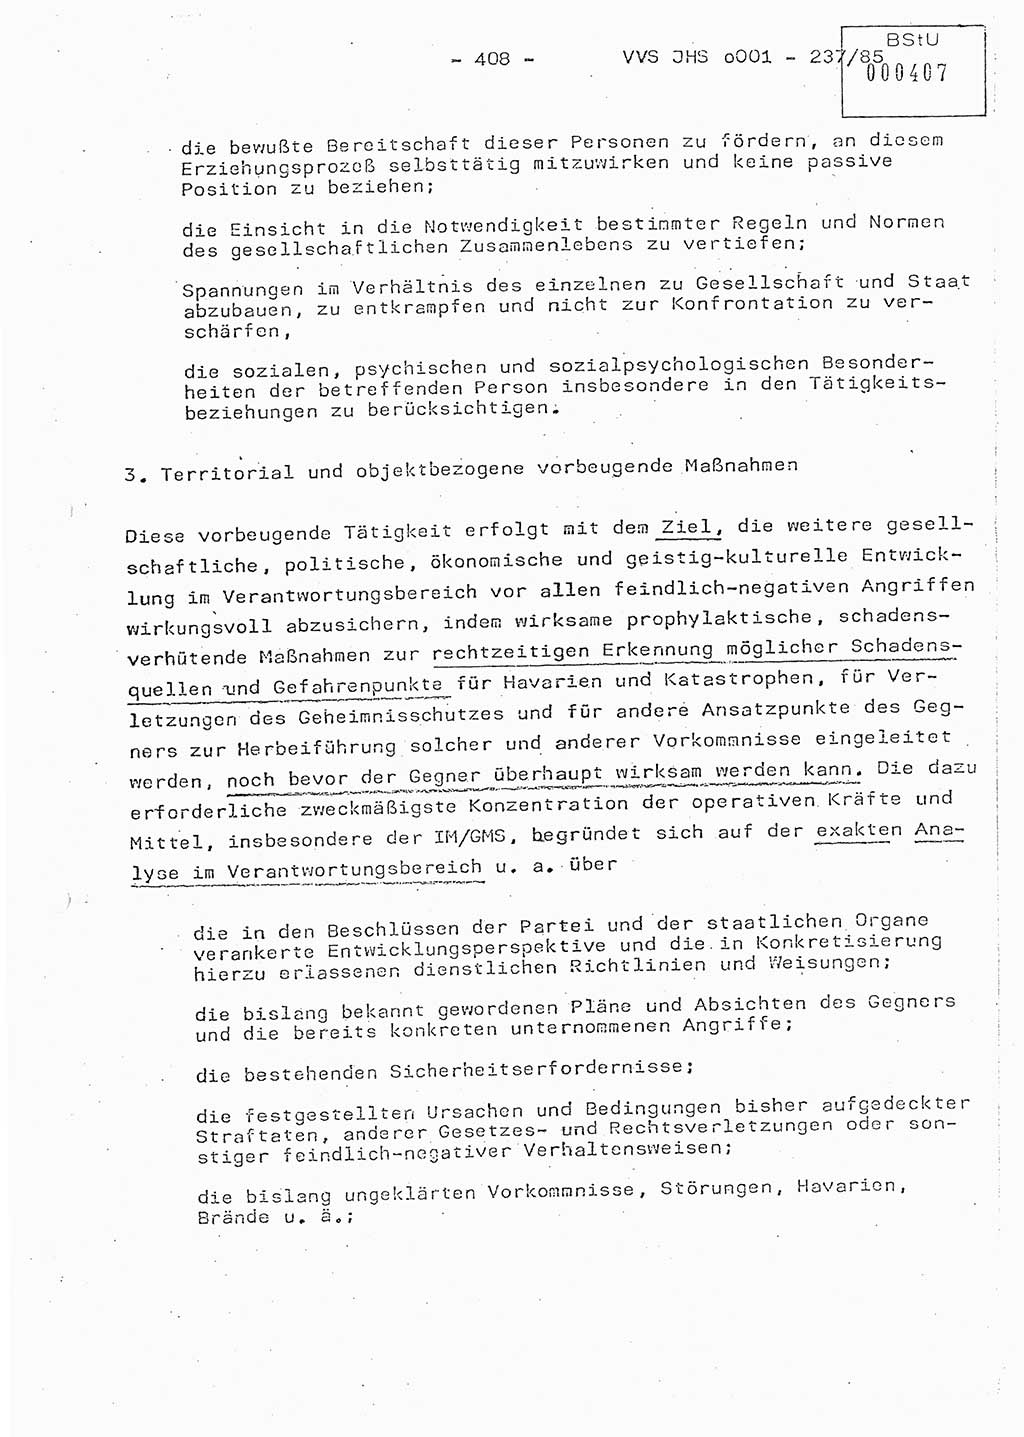 Dissertation Oberstleutnant Peter Jakulski (JHS), Oberstleutnat Christian Rudolph (HA Ⅸ), Major Horst Böttger (ZMD), Major Wolfgang Grüneberg (JHS), Major Albert Meutsch (JHS), Ministerium für Staatssicherheit (MfS) [Deutsche Demokratische Republik (DDR)], Juristische Hochschule (JHS), Vertrauliche Verschlußsache (VVS) o001-237/85, Potsdam 1985, Seite 408 (Diss. MfS DDR JHS VVS o001-237/85 1985, S. 408)